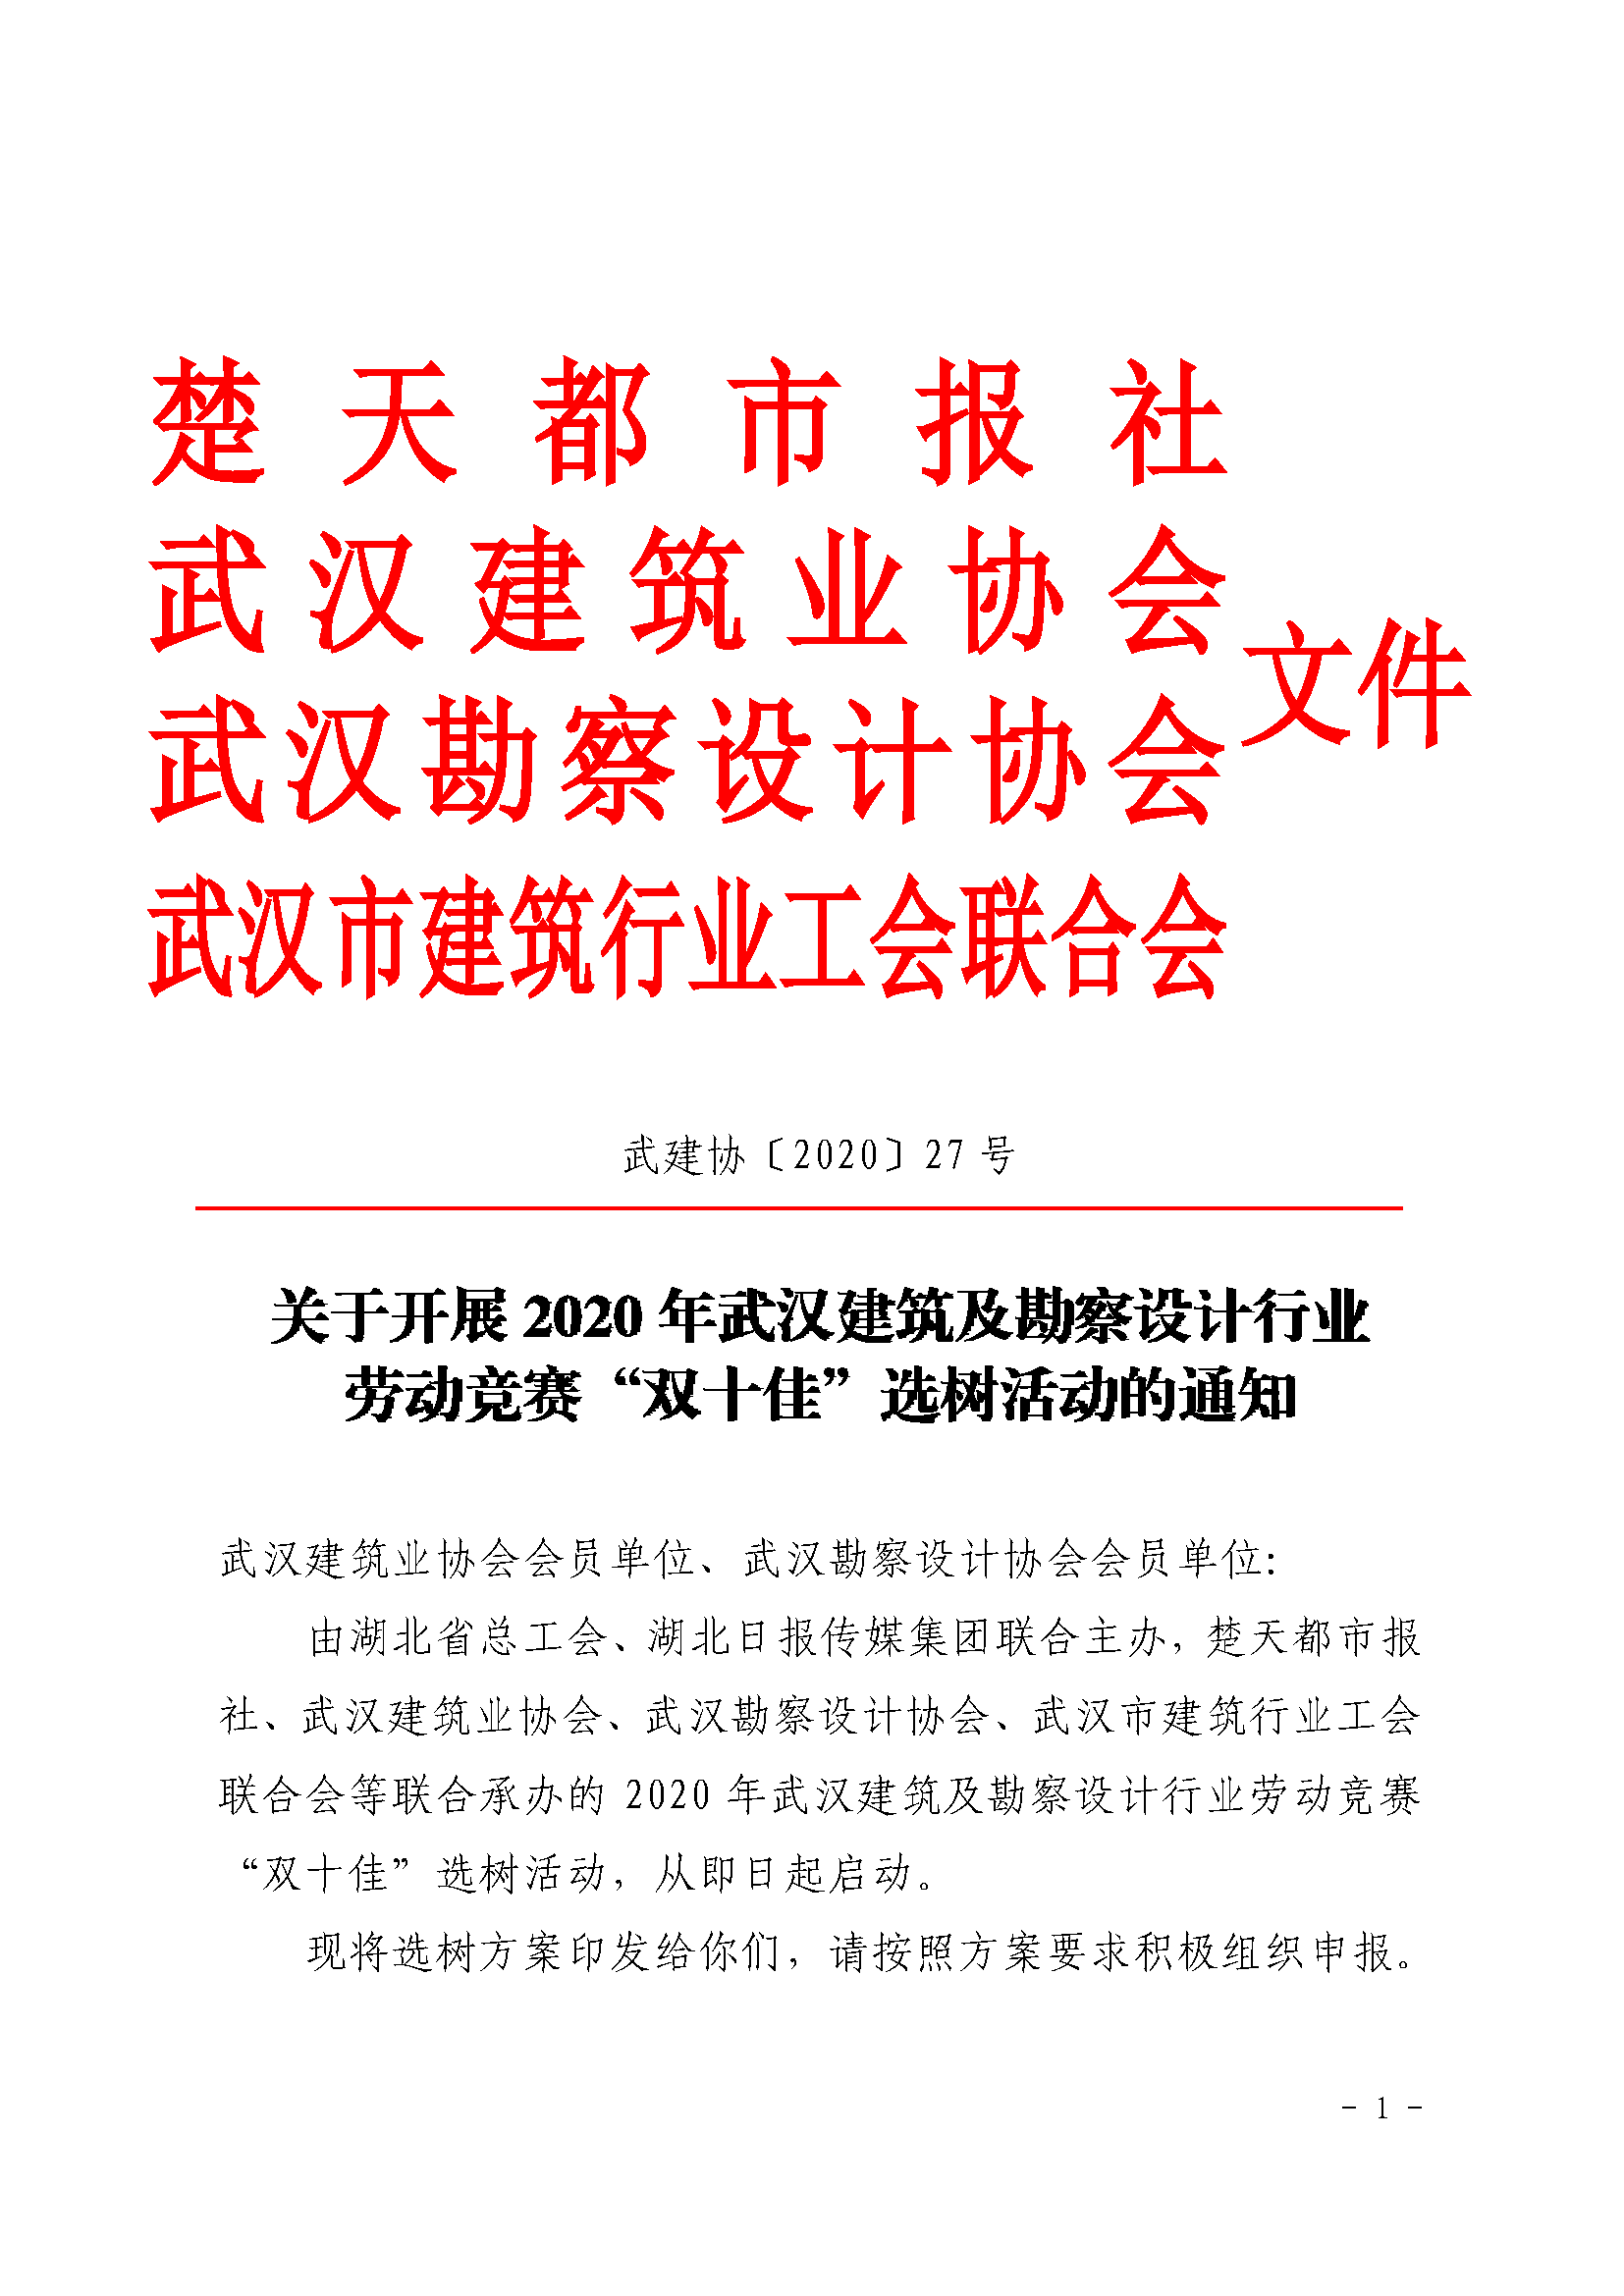 2020 年武汉建筑及勘察设计行业劳动竞赛“双十佳”选树活动通知